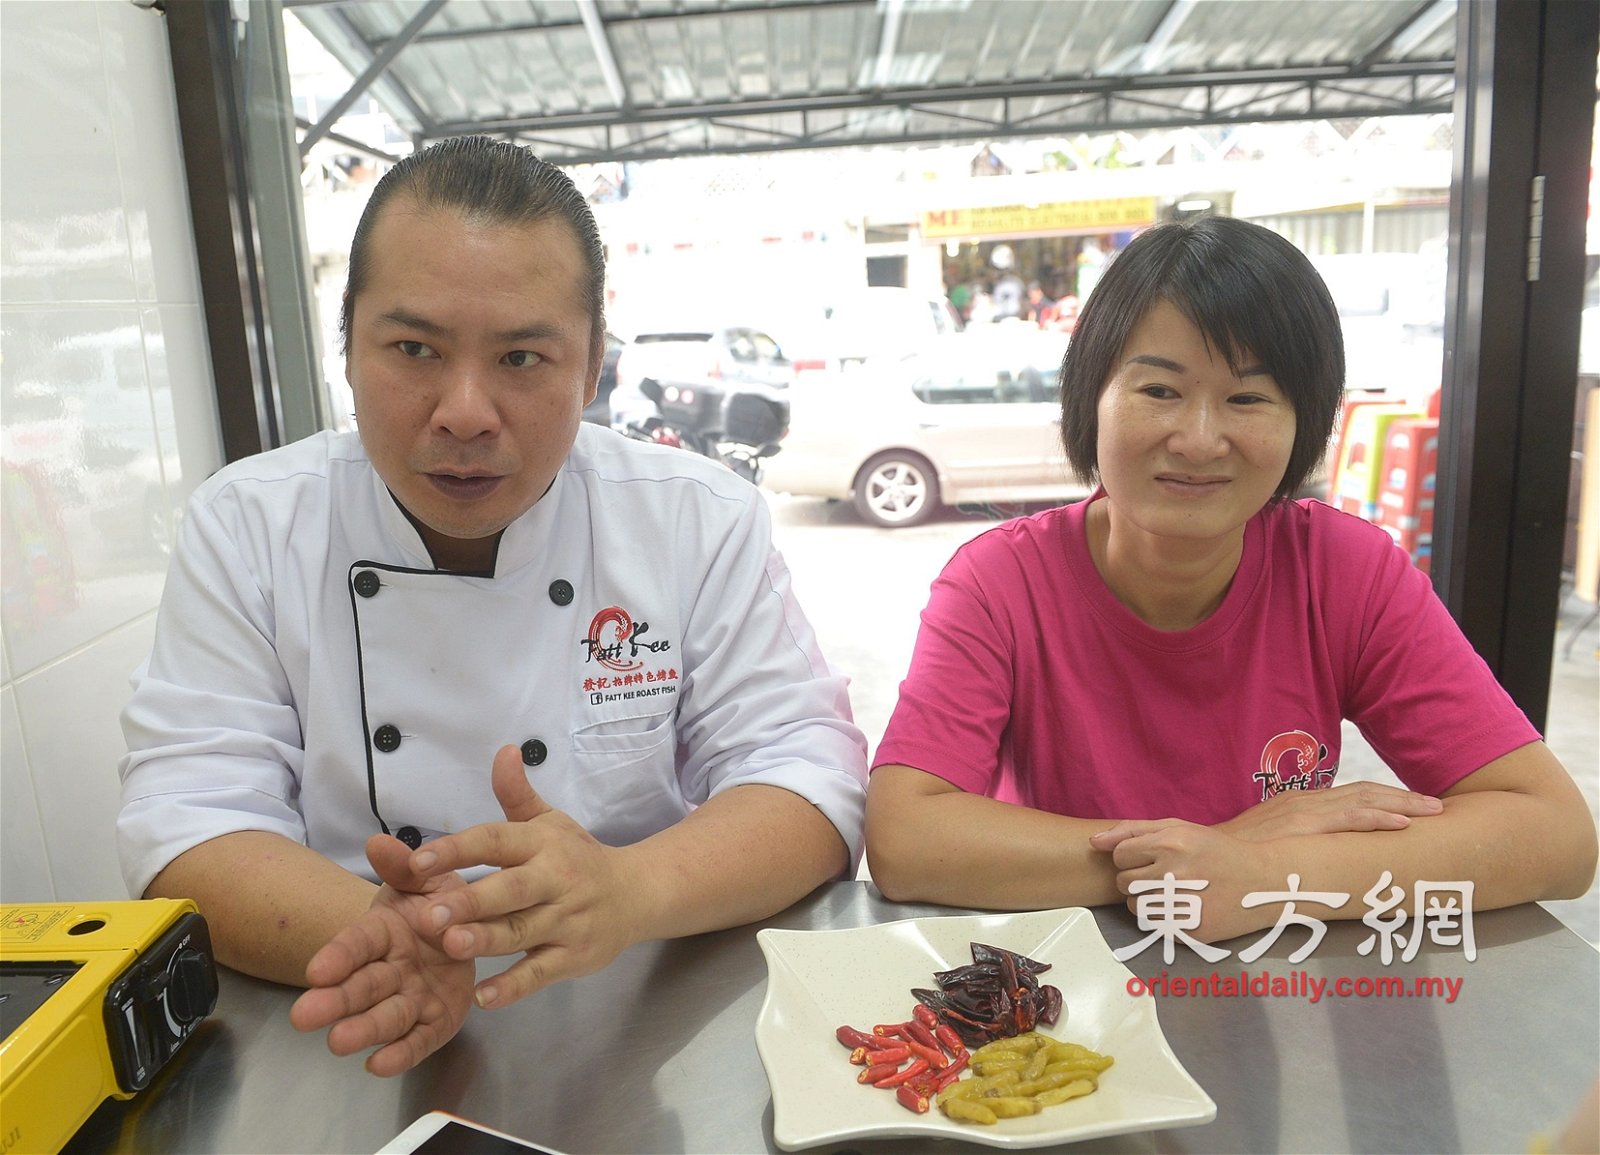 老板张顺发（左）与老板娘陈小华，一个负责厨房，一个负责楼面招呼客人，夫妻俩合作无间。